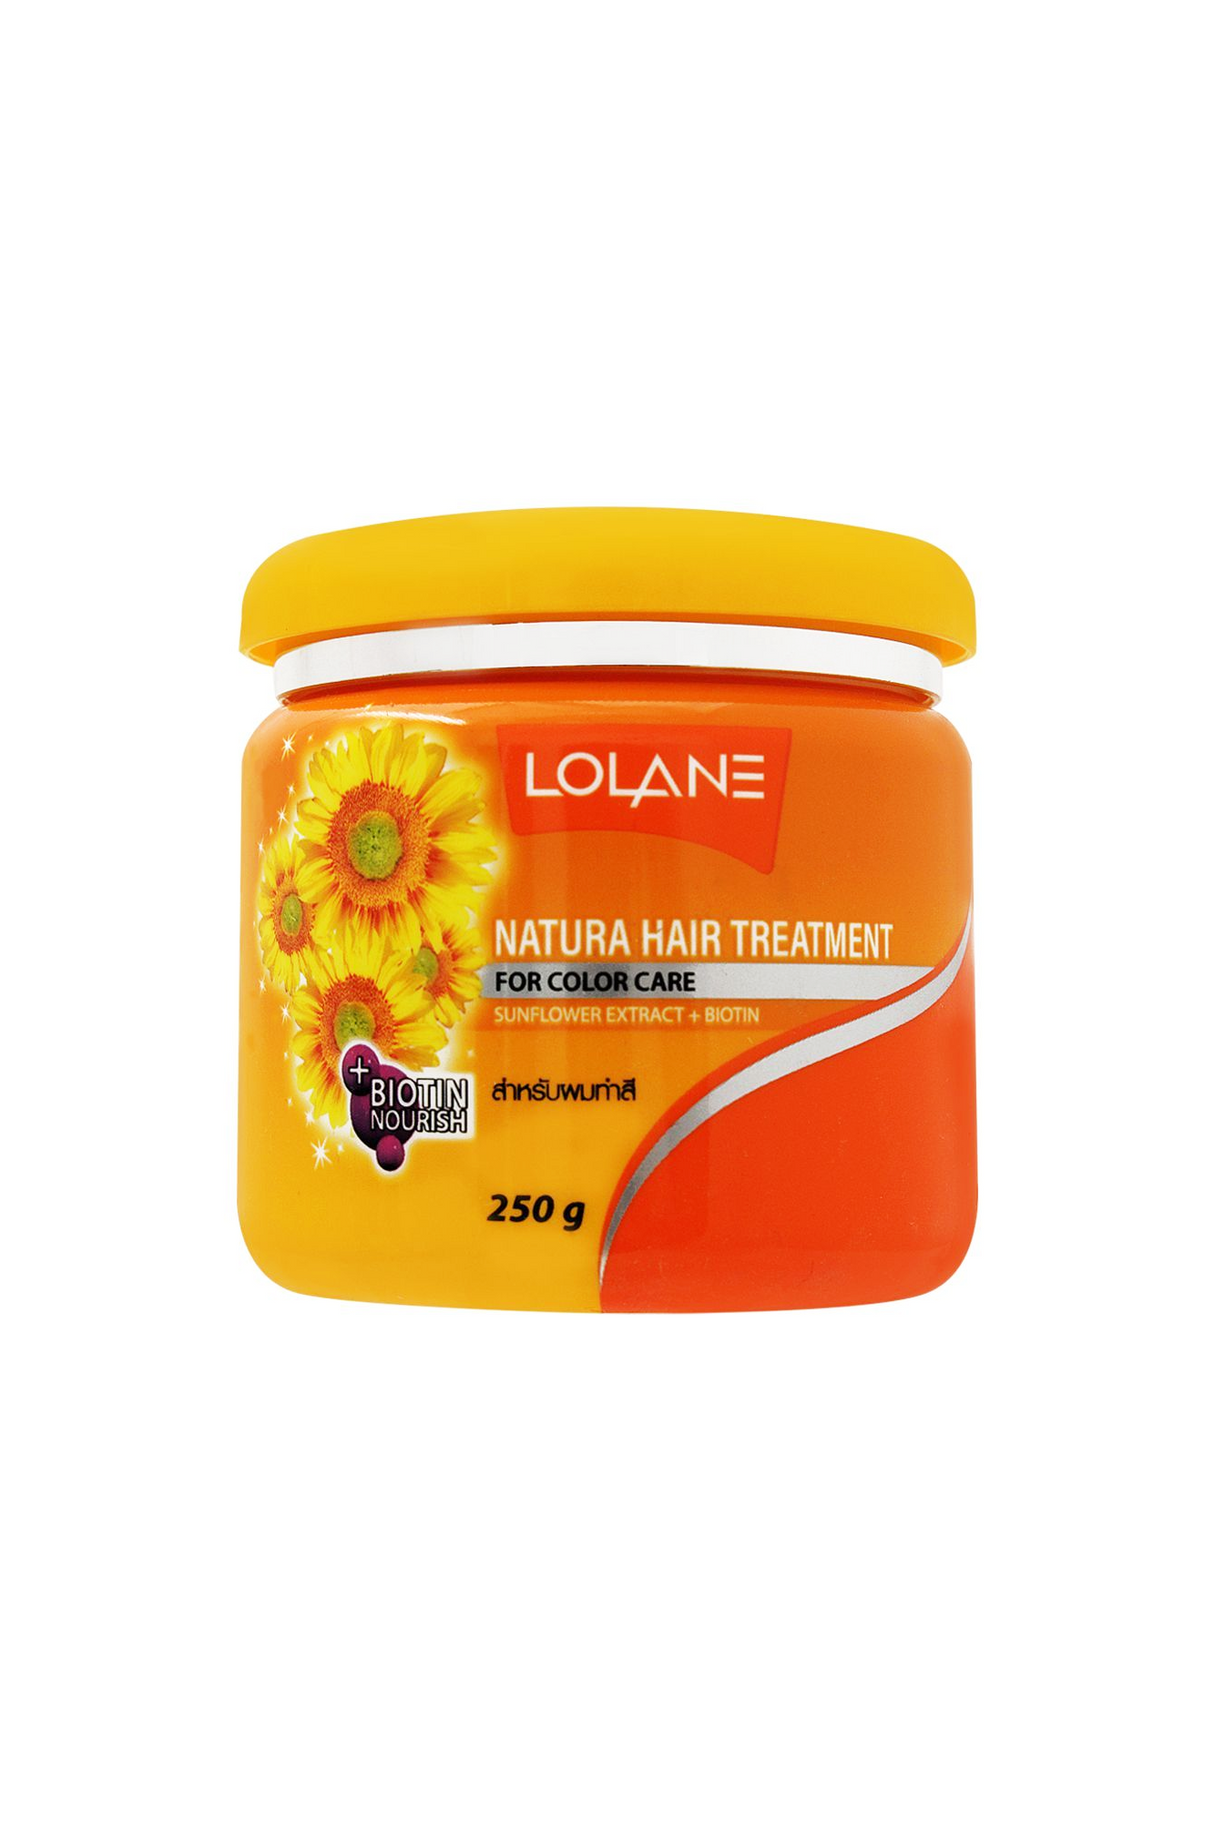 lolane hair treatment clr care  250g